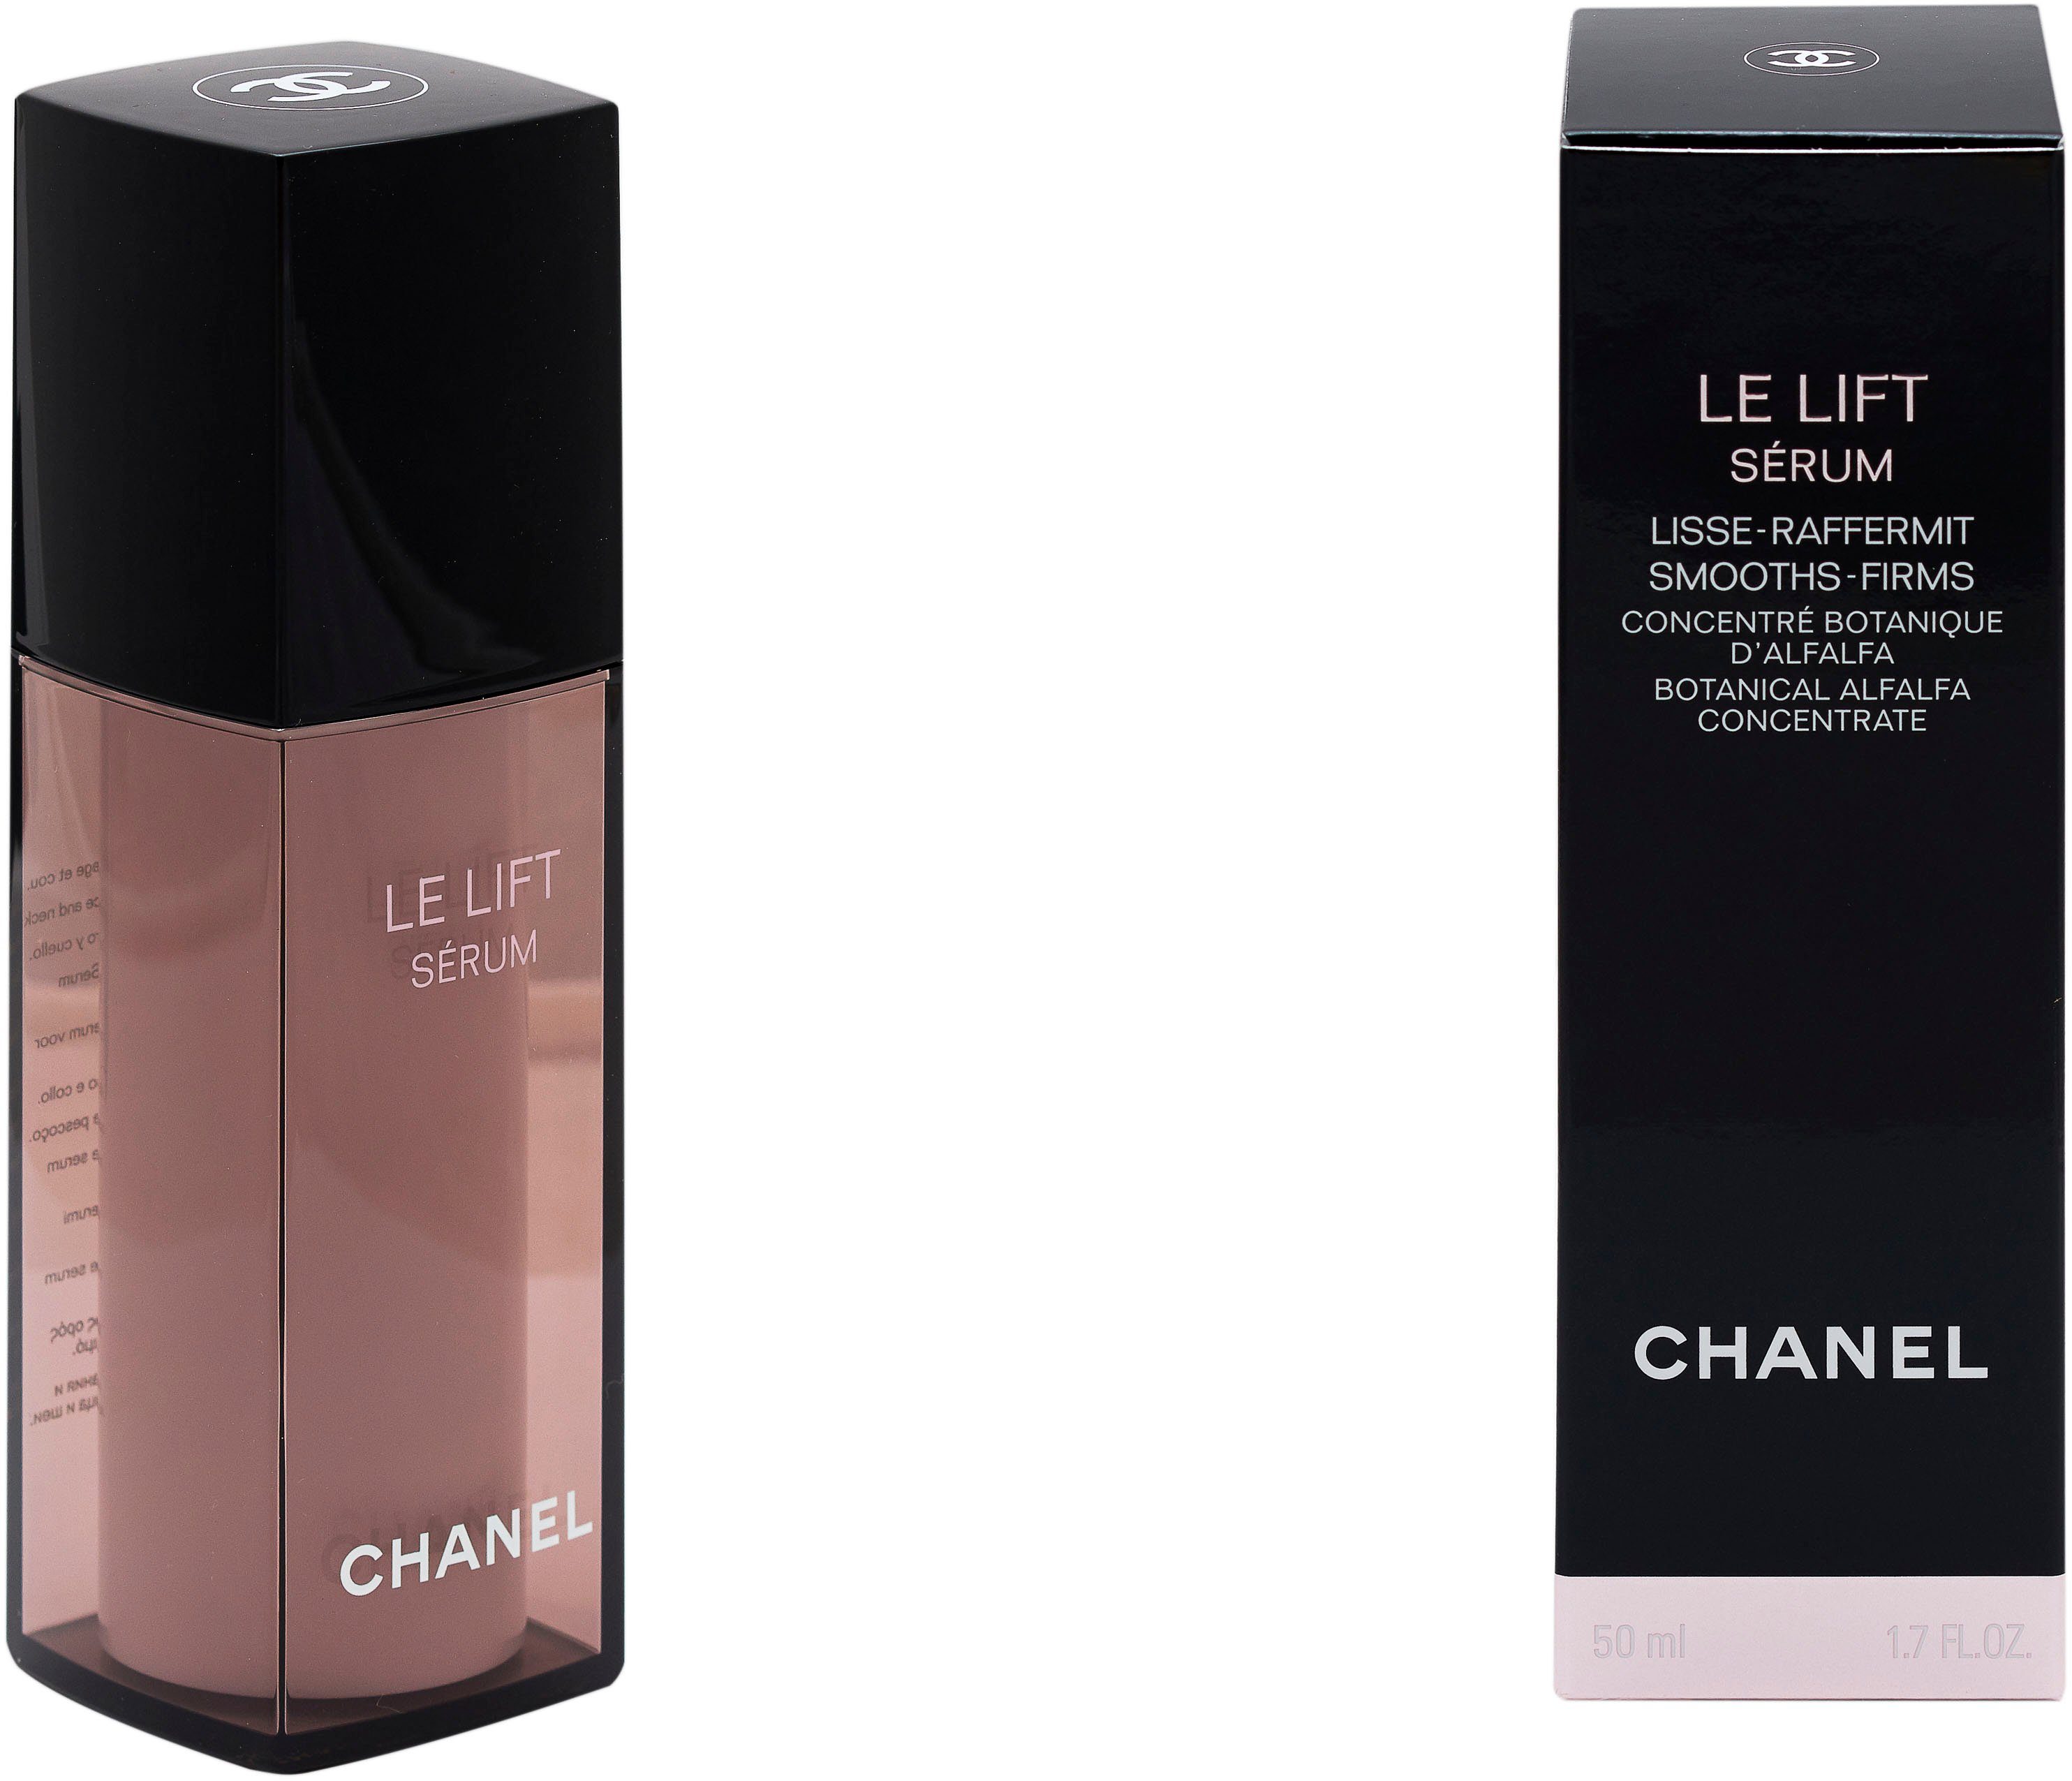 CHANEL Gesichtsserum Chanel Serum Lift Haut reife Lisse-Raffermint, Le